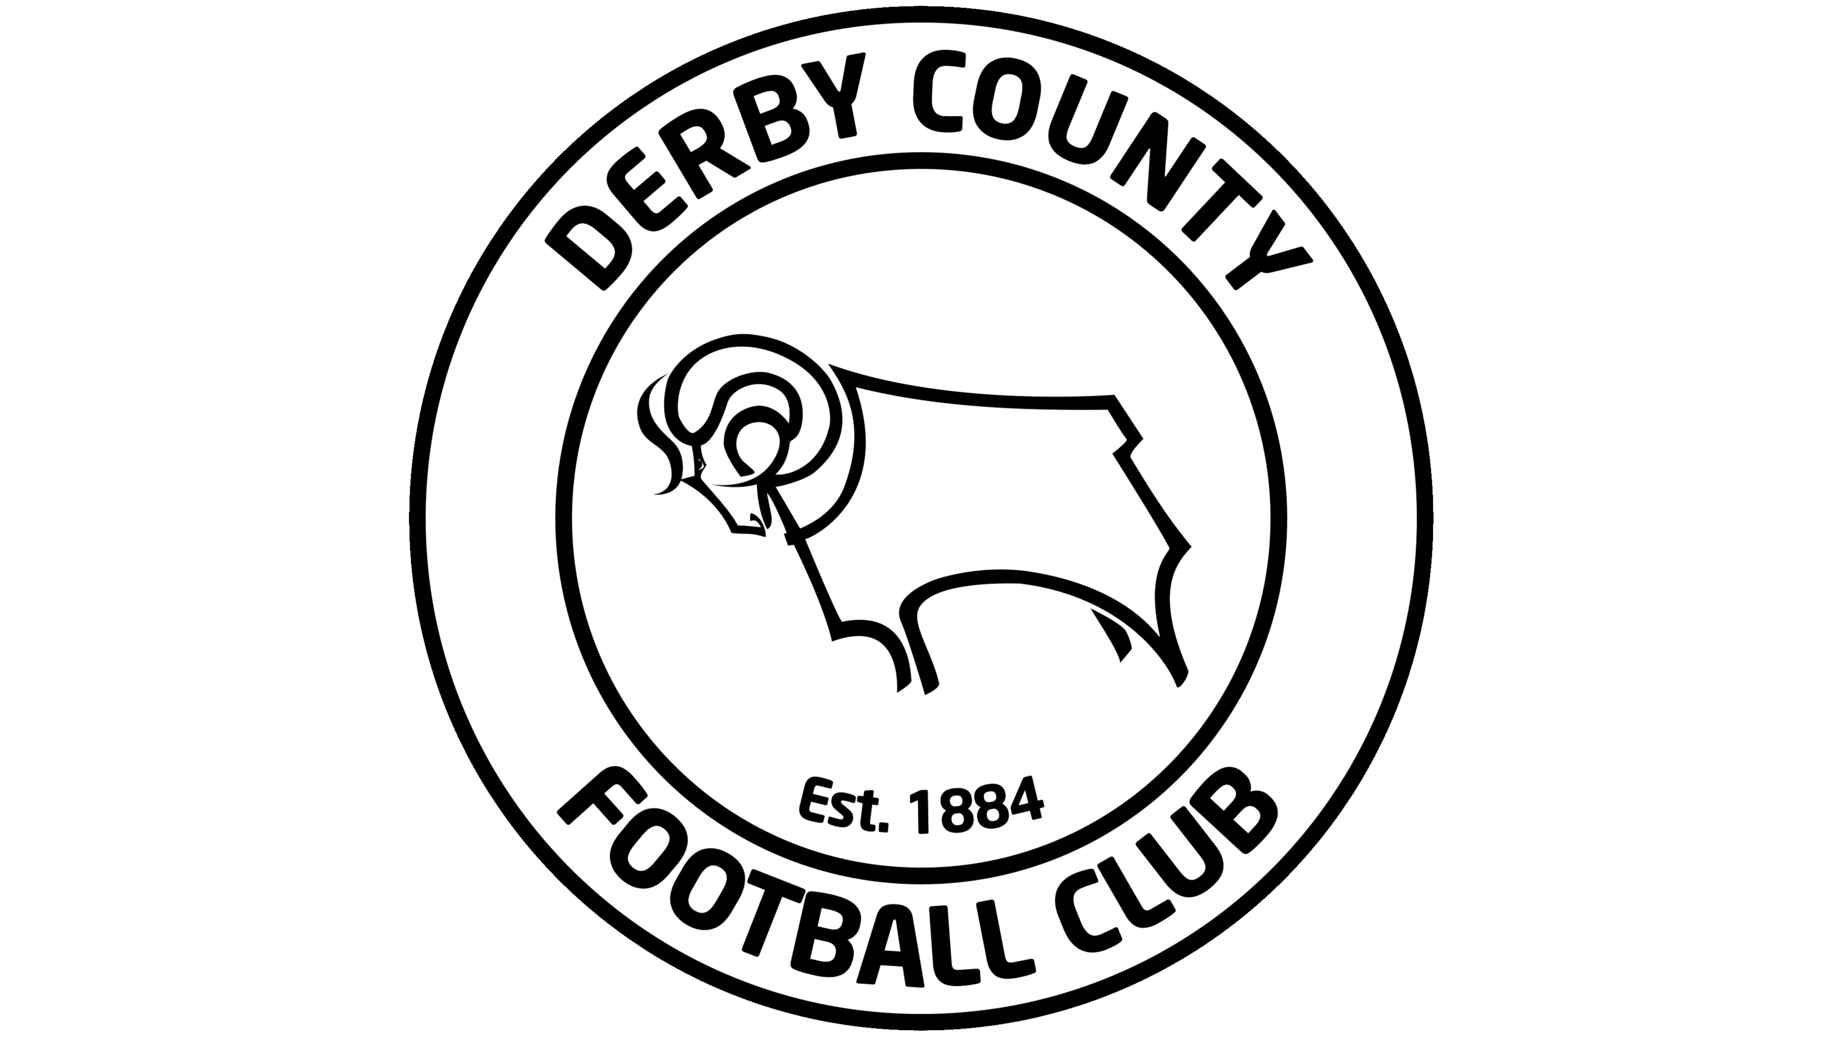 Derby county logo